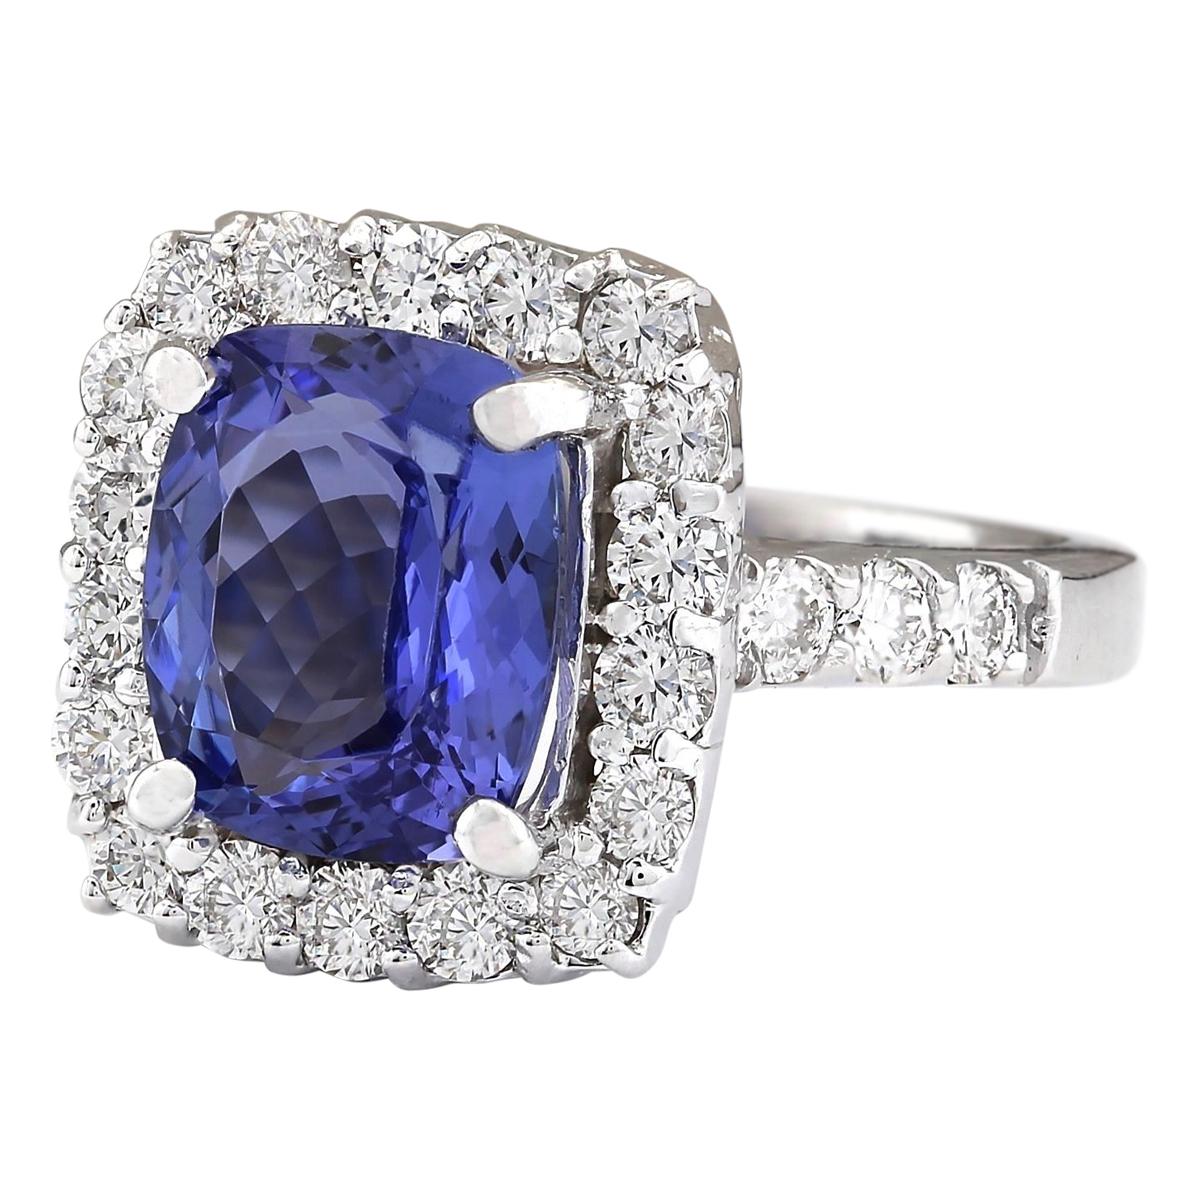 4.95 Carat Natural Tanzanite 14 Karat White Gold Diamond Ring
Stamped: 14K White Gold
Total Ring Weight: 7.3 Grams
Total Natural Tanzanite Weight is 3.75 Carat (Measures: 10.00x8.00 mm)
Color: Blue
Total Natural Diamond Weight is 1.20